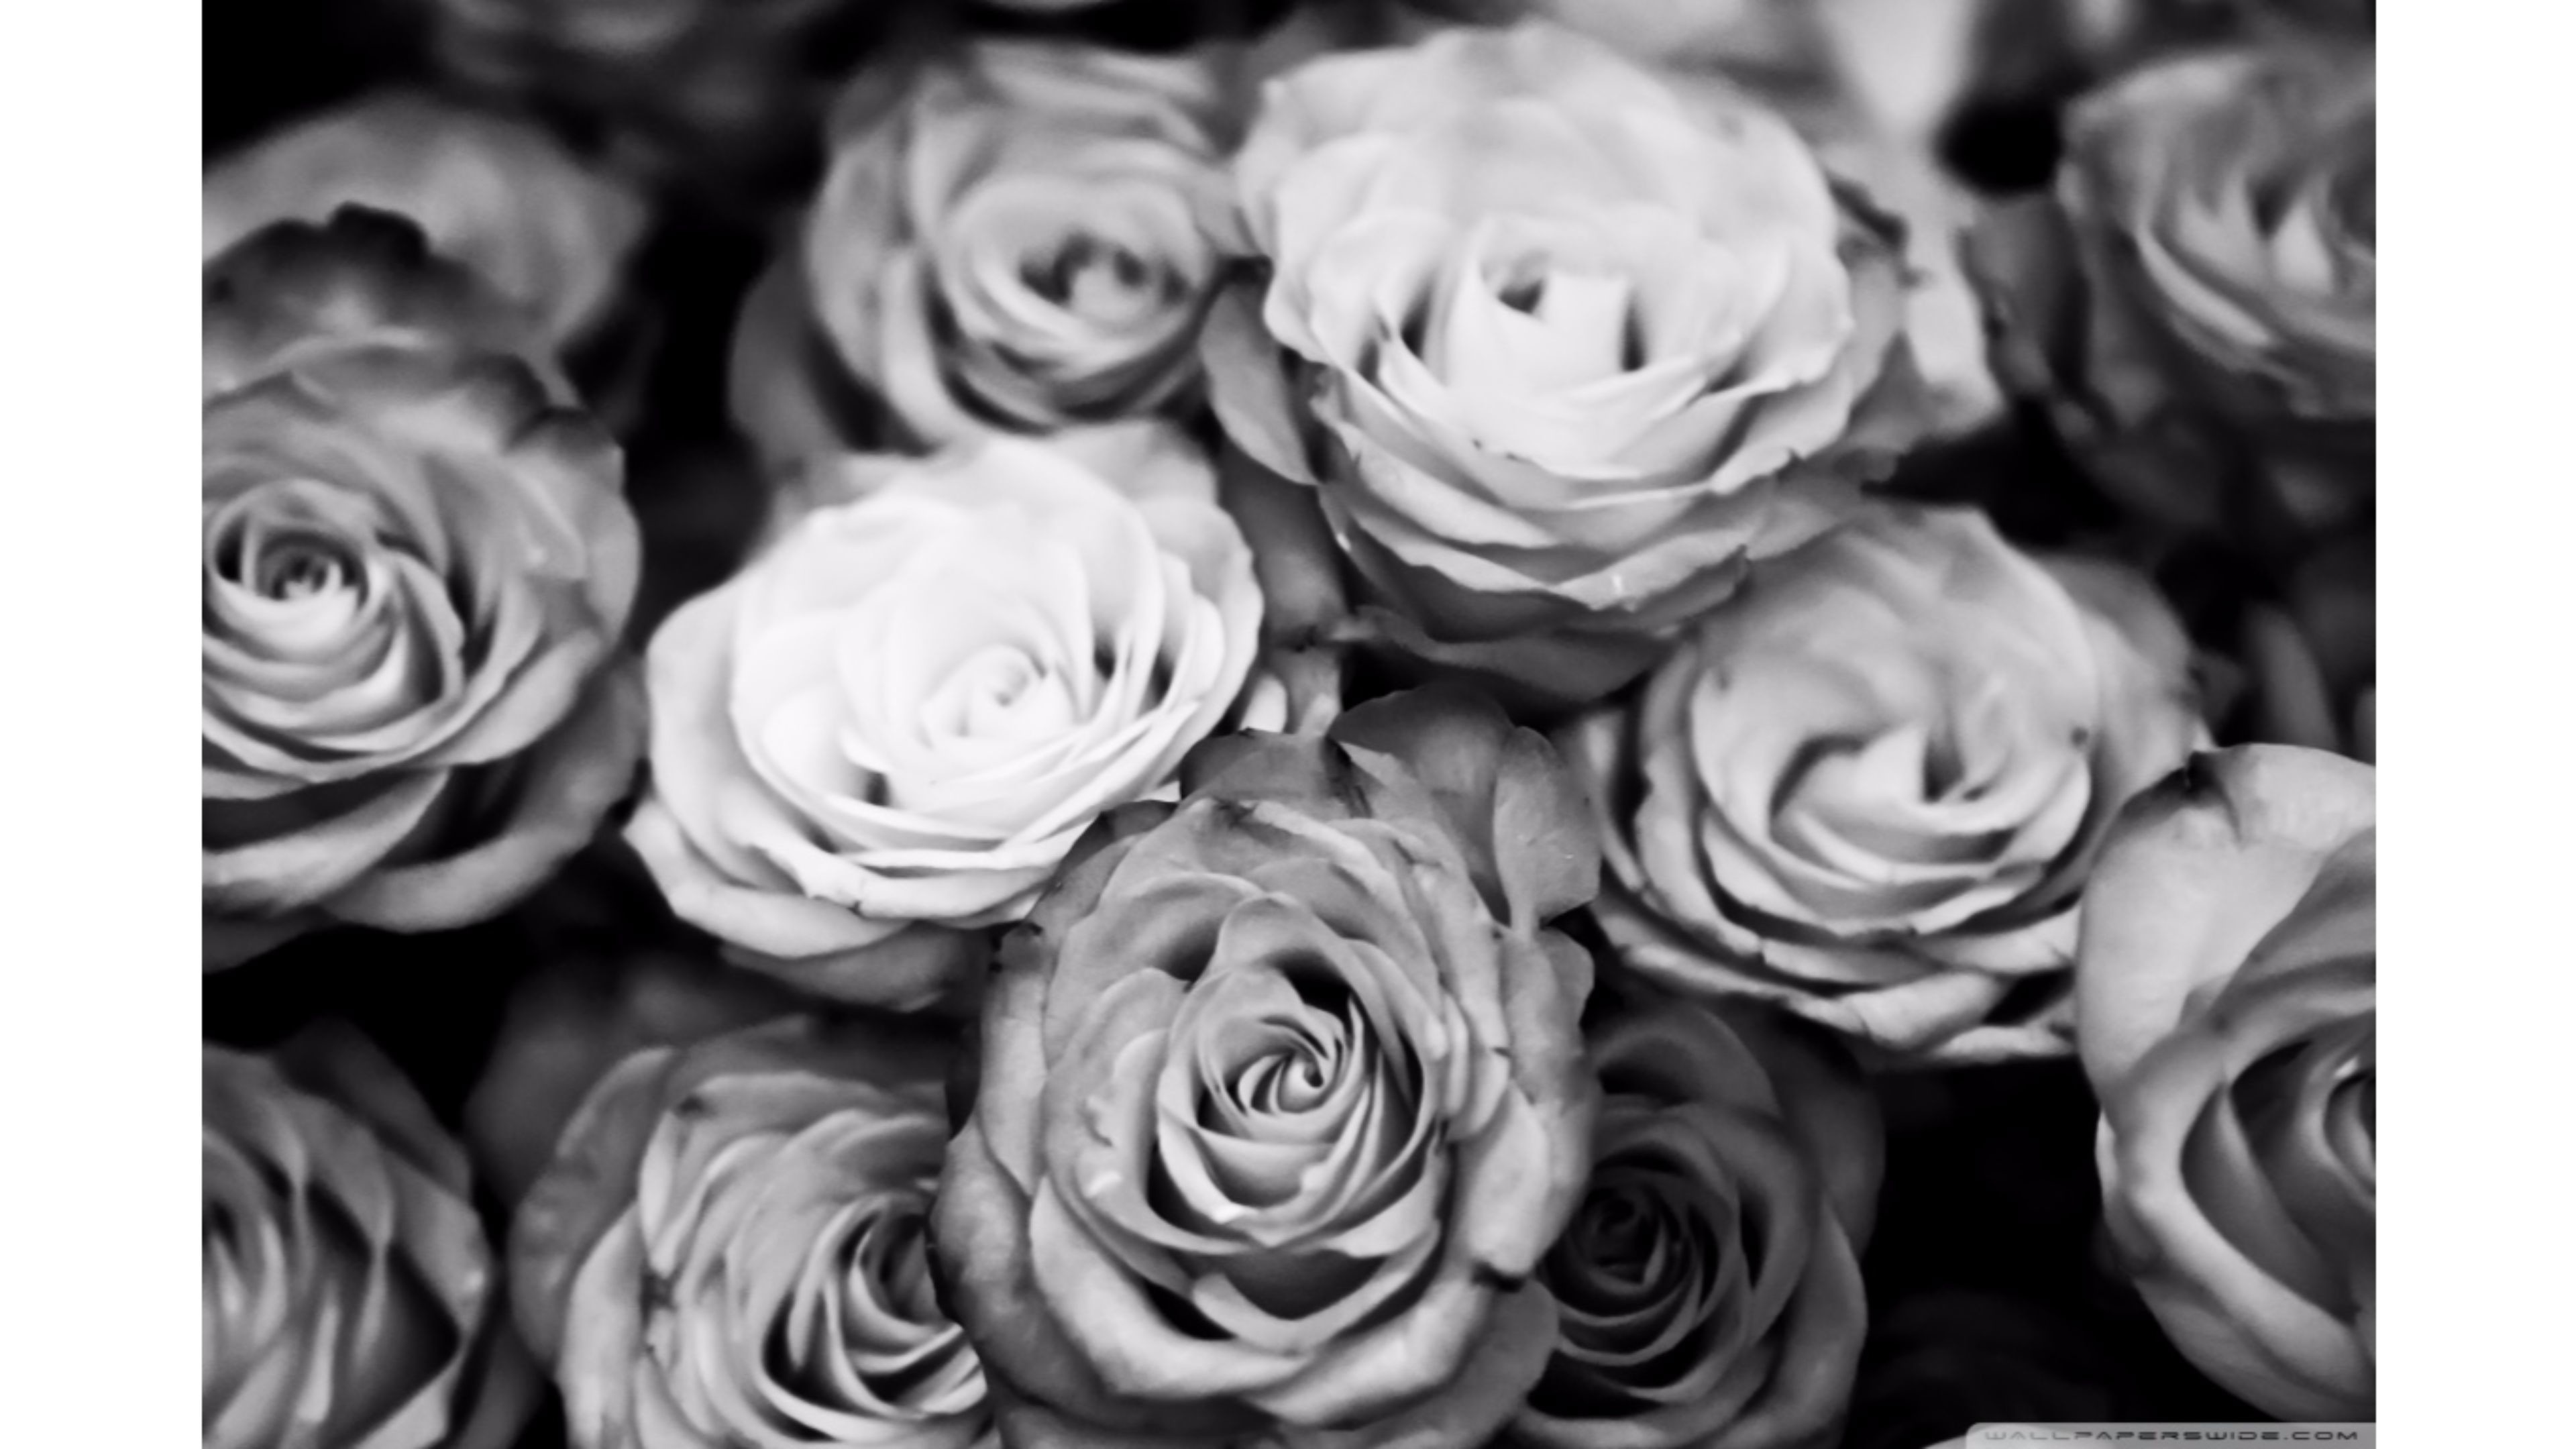 black and white rose wallpaper,garden roses,white,monochrome photography,rose,flower